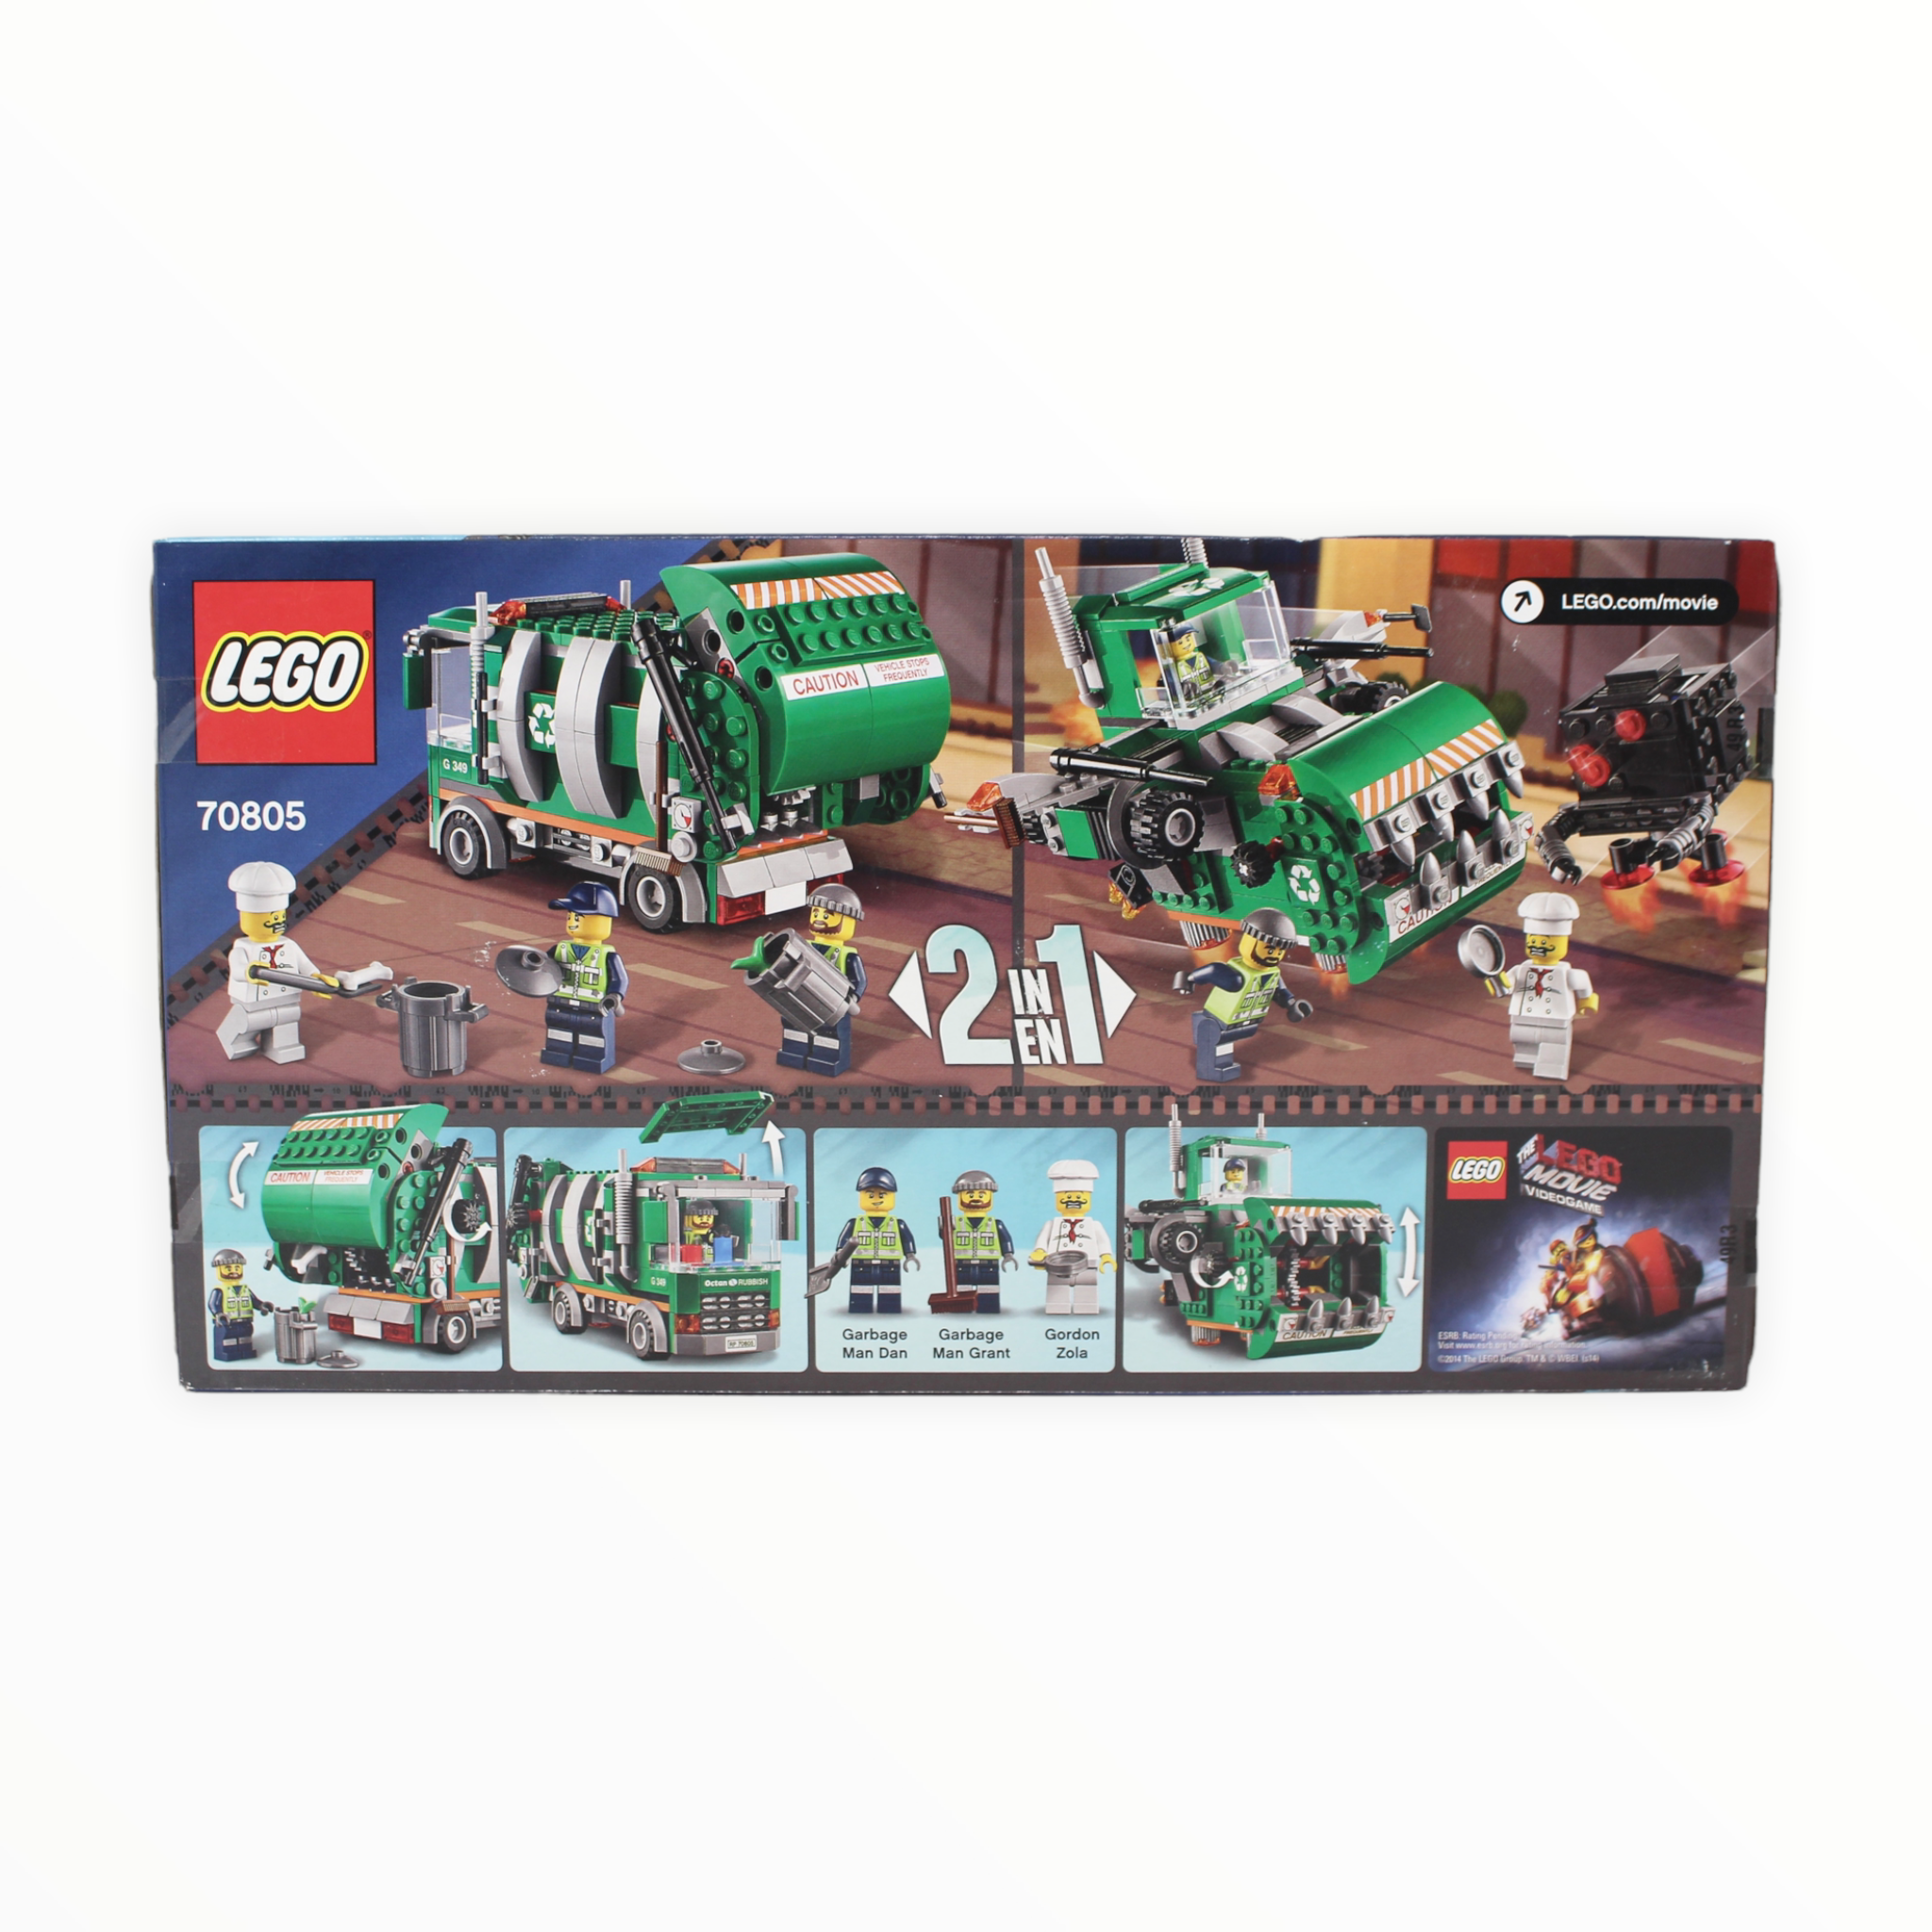 Retired Set 70805 The LEGO Movie Trash Chomper